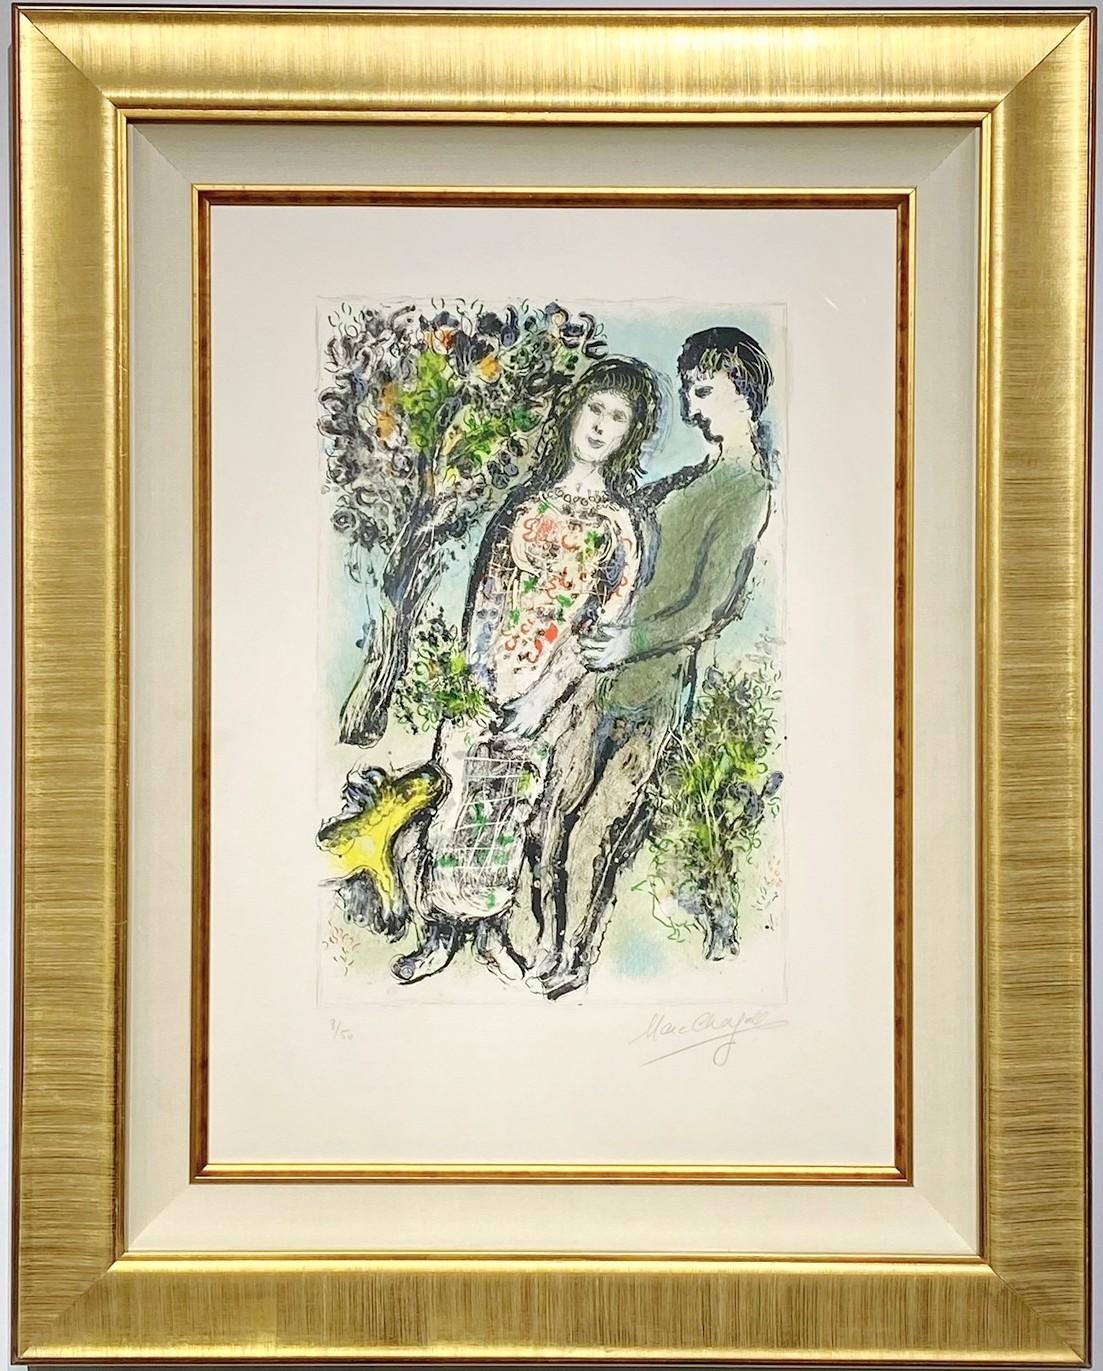 Marc Chagall (Russland/Frankreich 1887-1985). 

"L'Oranger". 

Jahr 1975

Signiert und nummeriert Marc Chagall 8/50. Farblithografie, gedruckt auf Arches.
Gerahmt 35,5H x 28W x 2D Zoll
Abbildung Größe 48 x 32 cm
Blattgröße 65 x 47 cm.

Mourlot